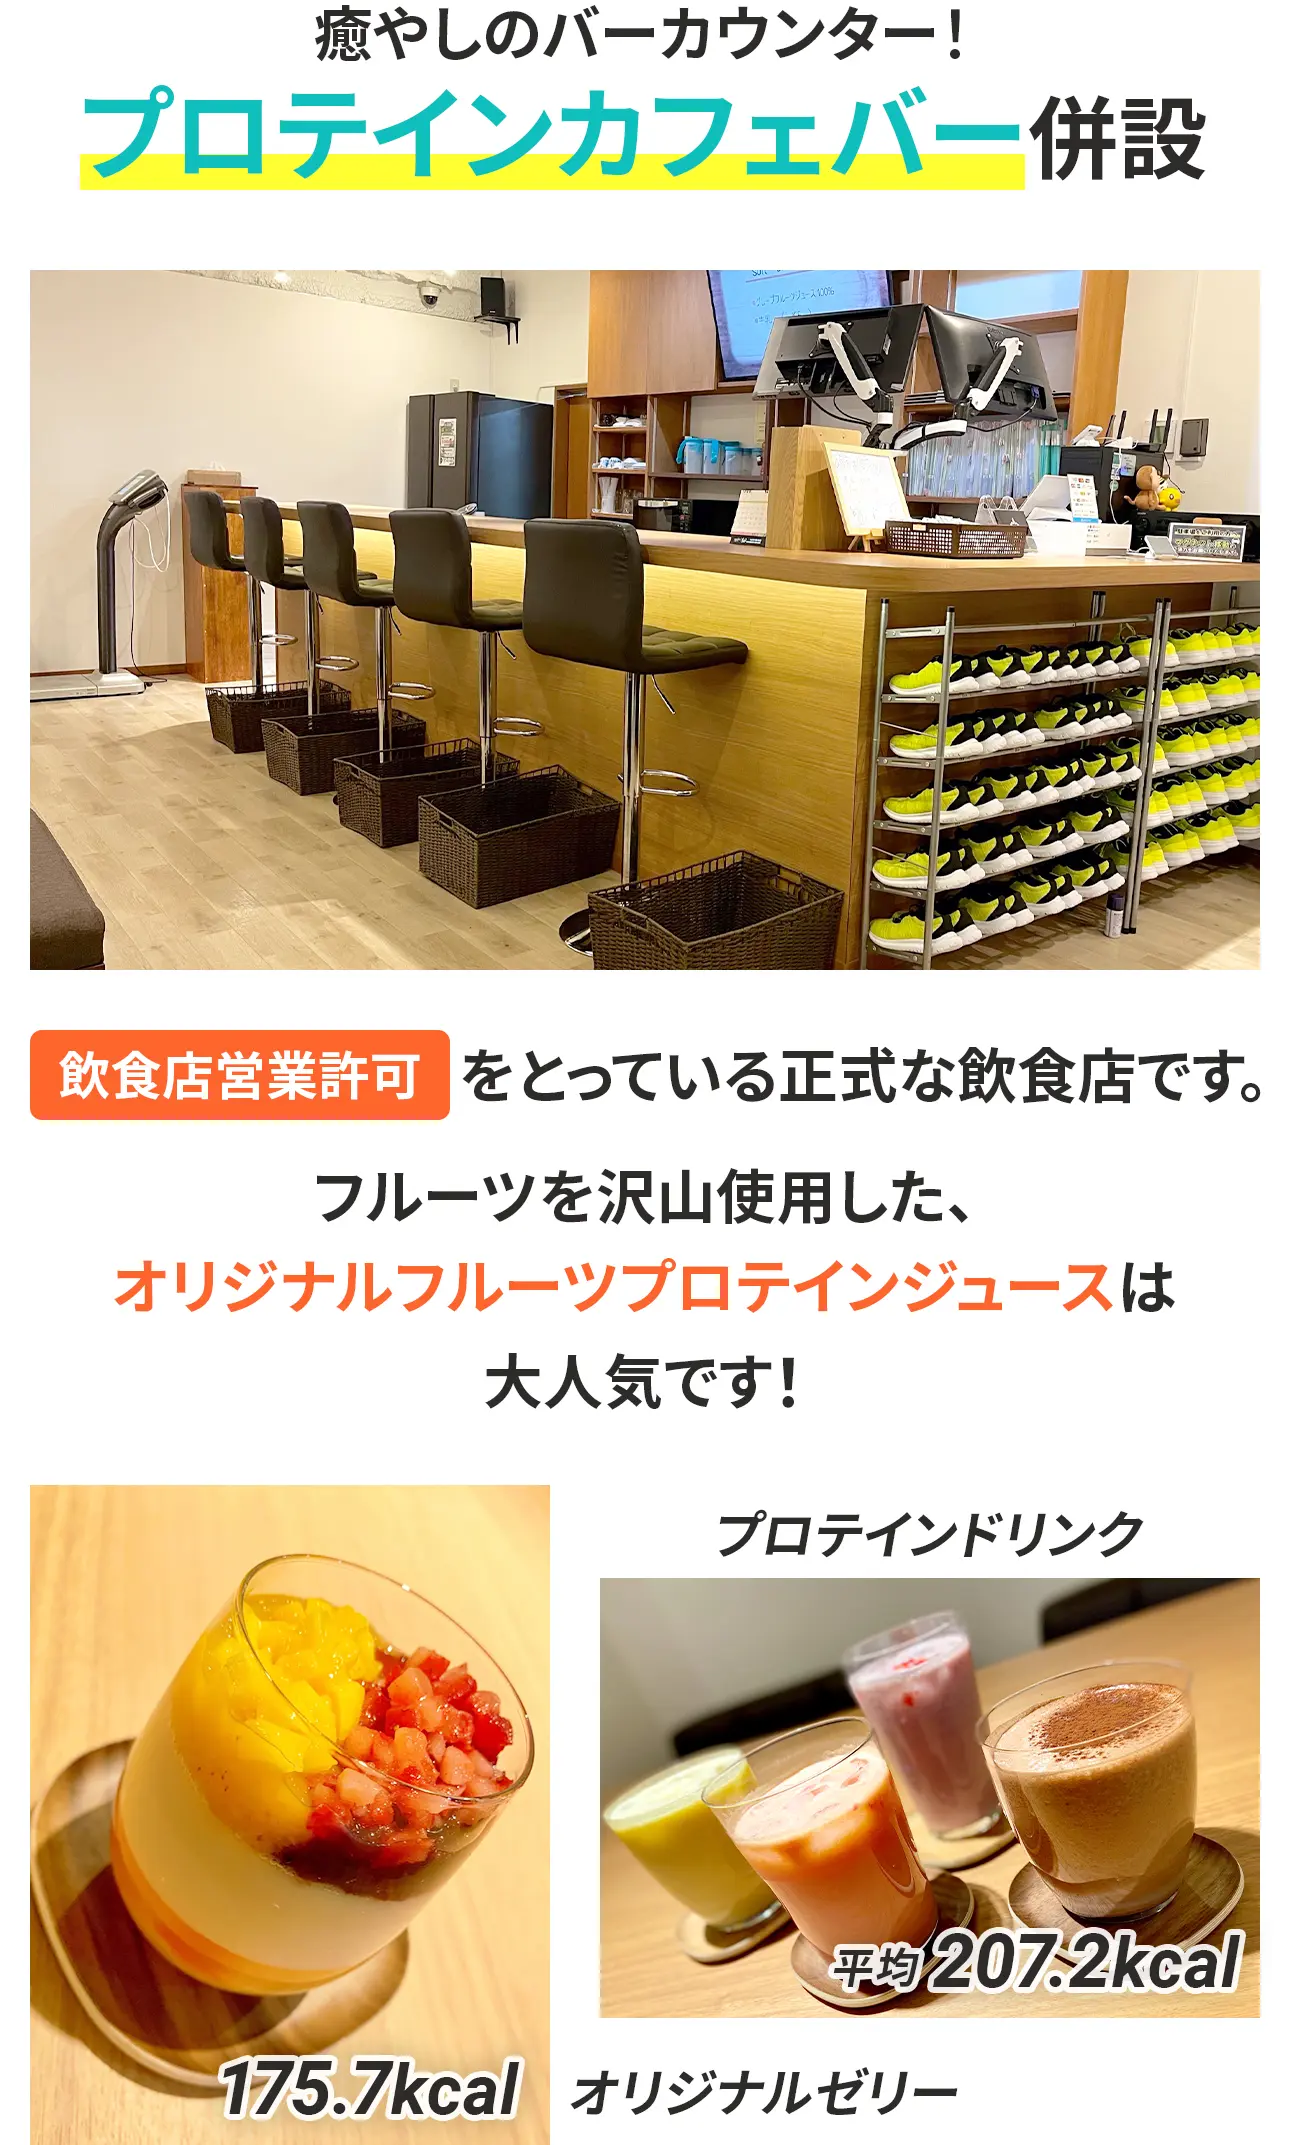 飲食店営業許可をとっている正式な飲食店としてプロテインカフェバーを併設。フルーツを沢山使用した、オリジナルフルーツプロテインジュースは大人気です！